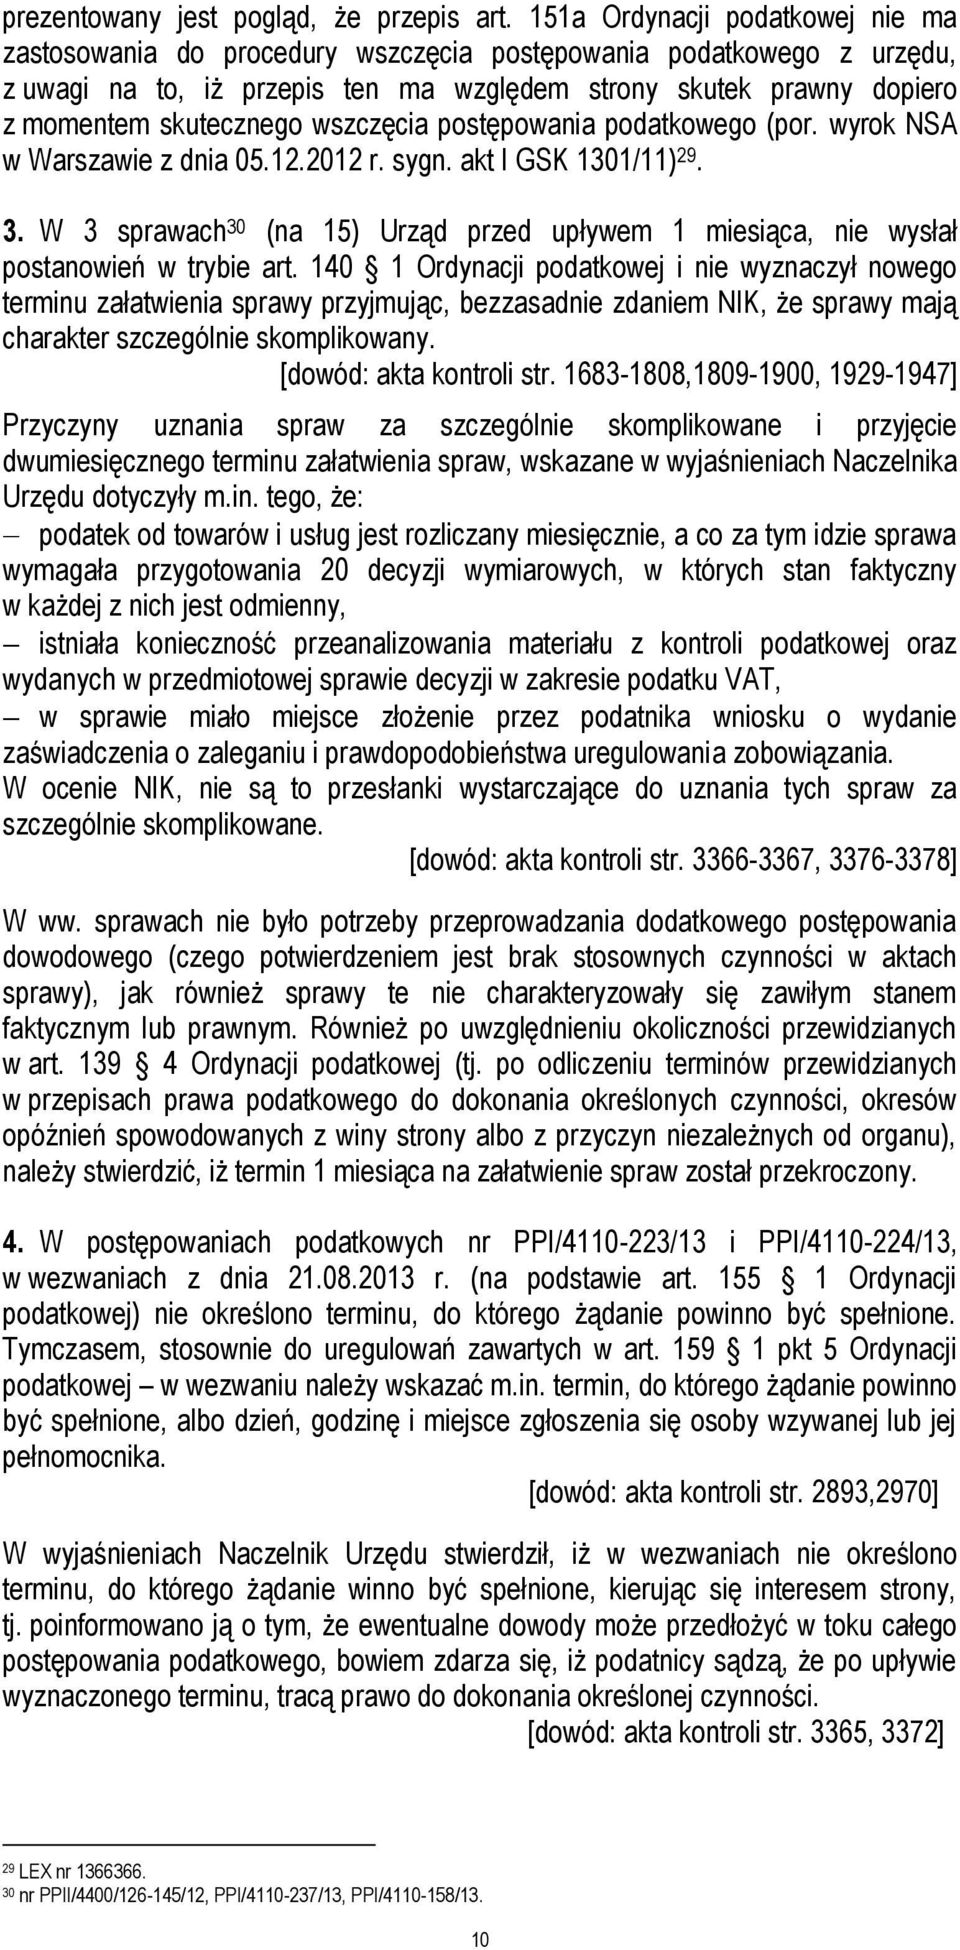 wszczęcia postępowania podatkowego (por. wyrok NSA w Warszawie z dnia 05.12.2012 r. sygn. akt I GSK 1301/11) 29. 3.